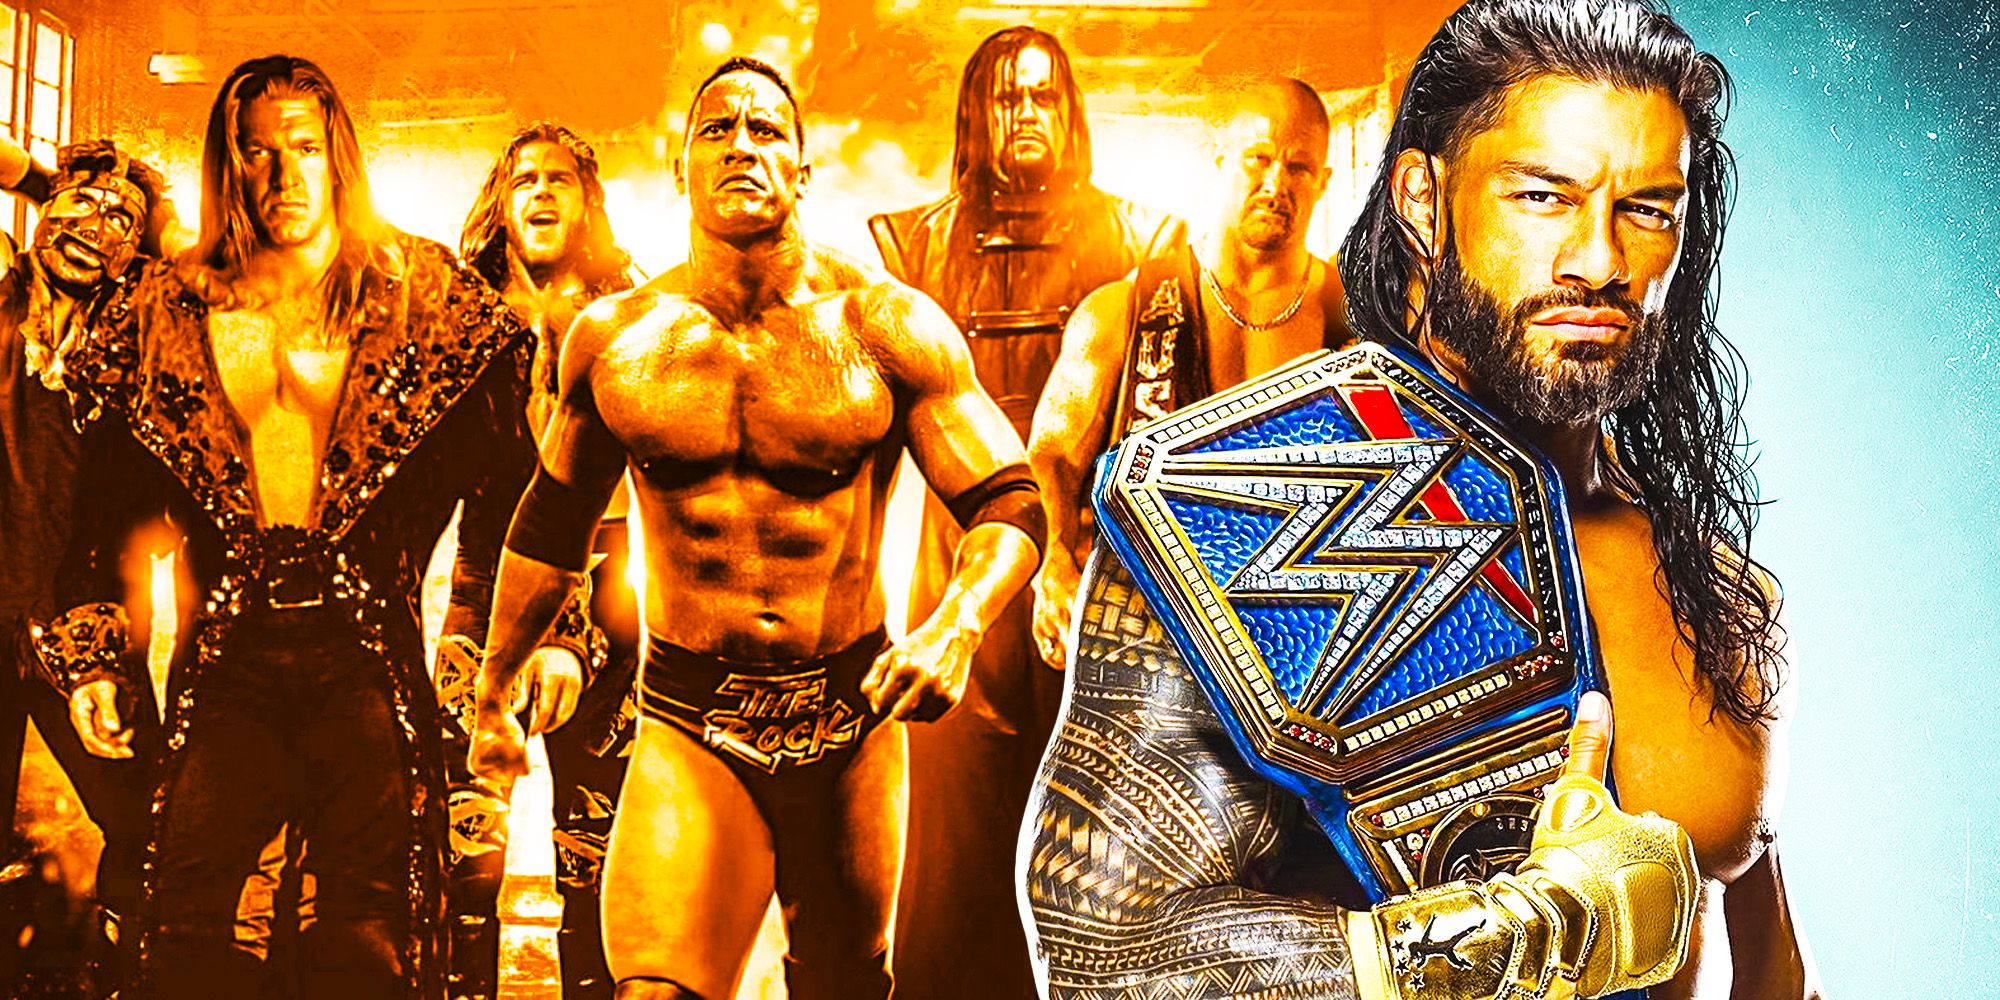 Roman Reigns WWE Attitude Era